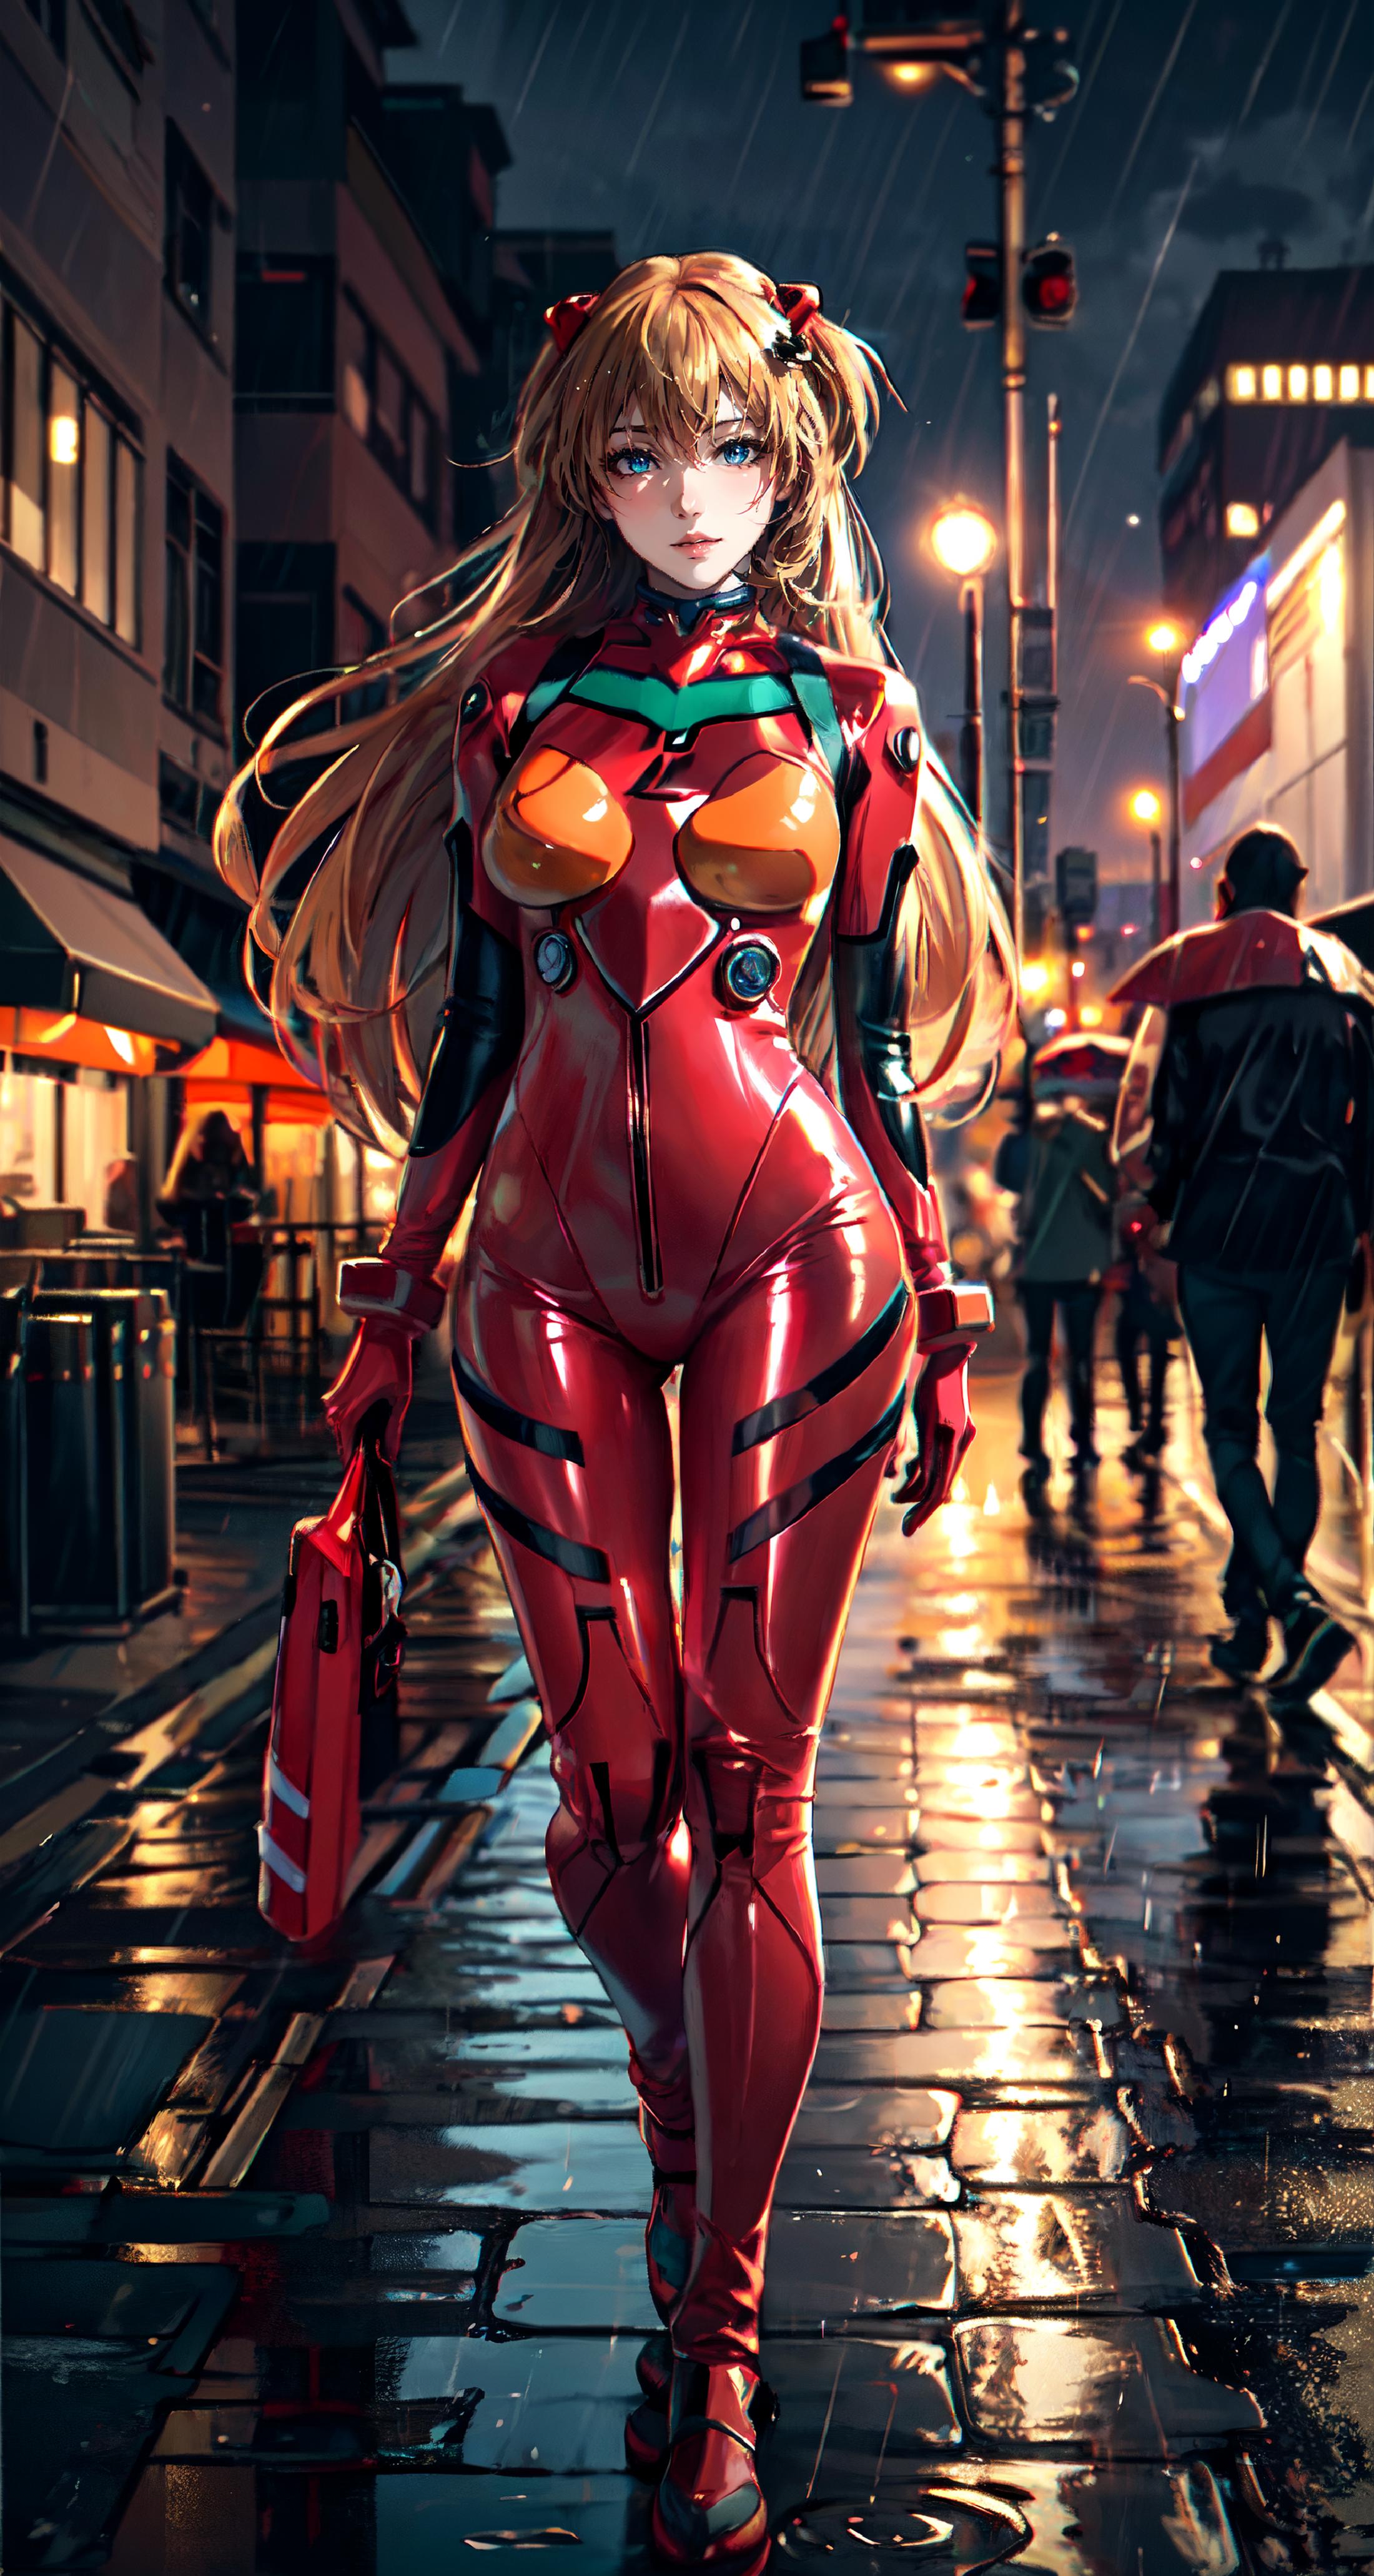 <Evangelion> Asuka Langley plugsuit cosplay costume |《Evangelion》明日香 战斗服 cos 服 |「Evangelion」 アスカ バトルスーツ コスプレ衣装 image by 0_vortex